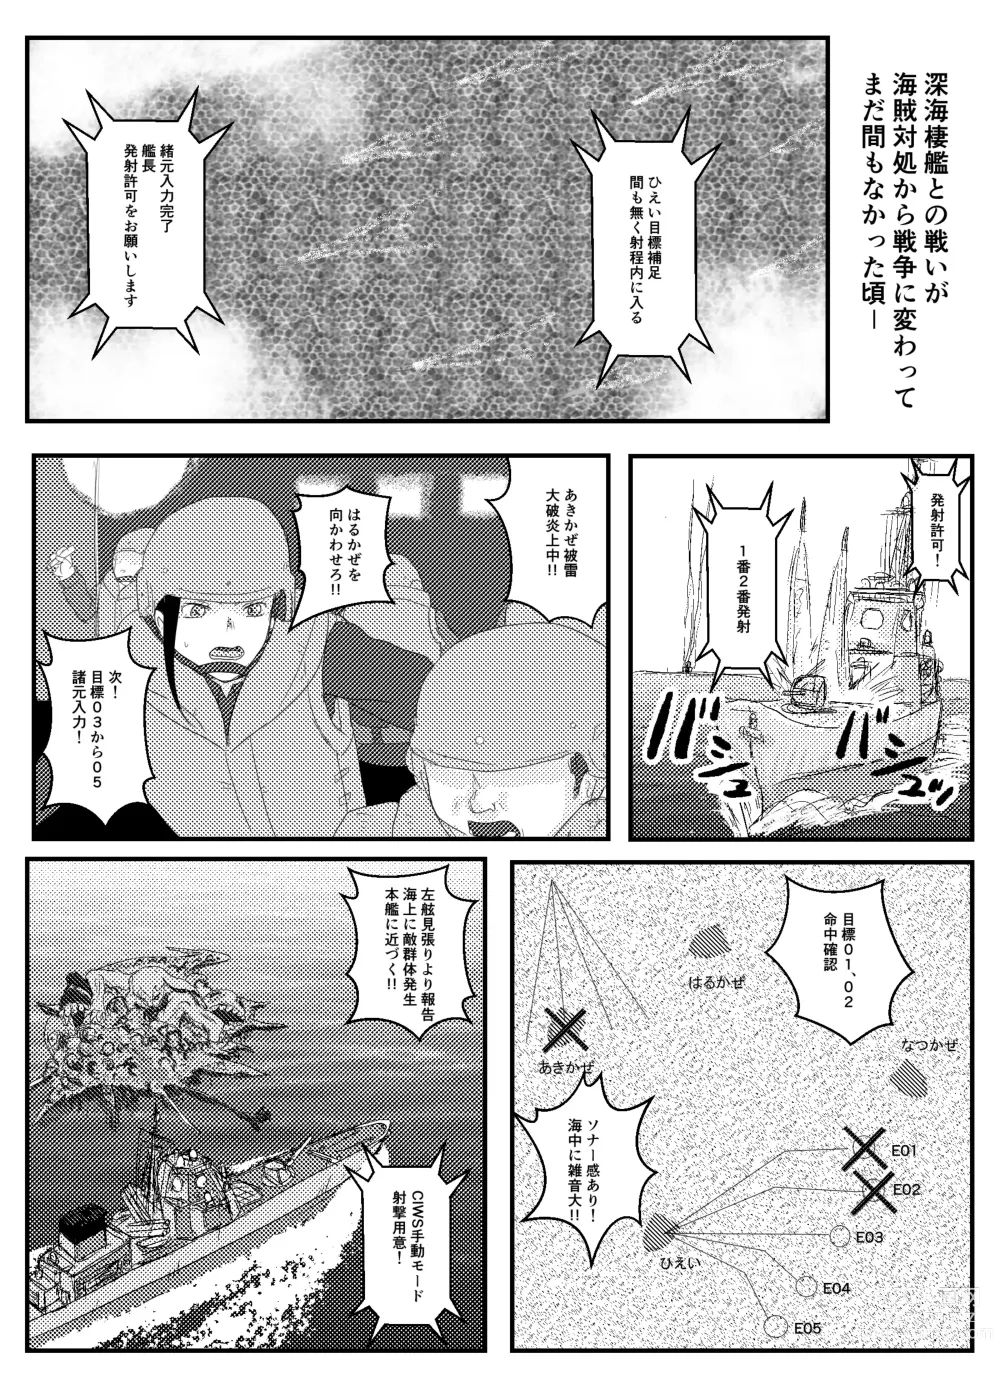 Page 2 of doujinshi Josei Teitoku no Miru Yume wa